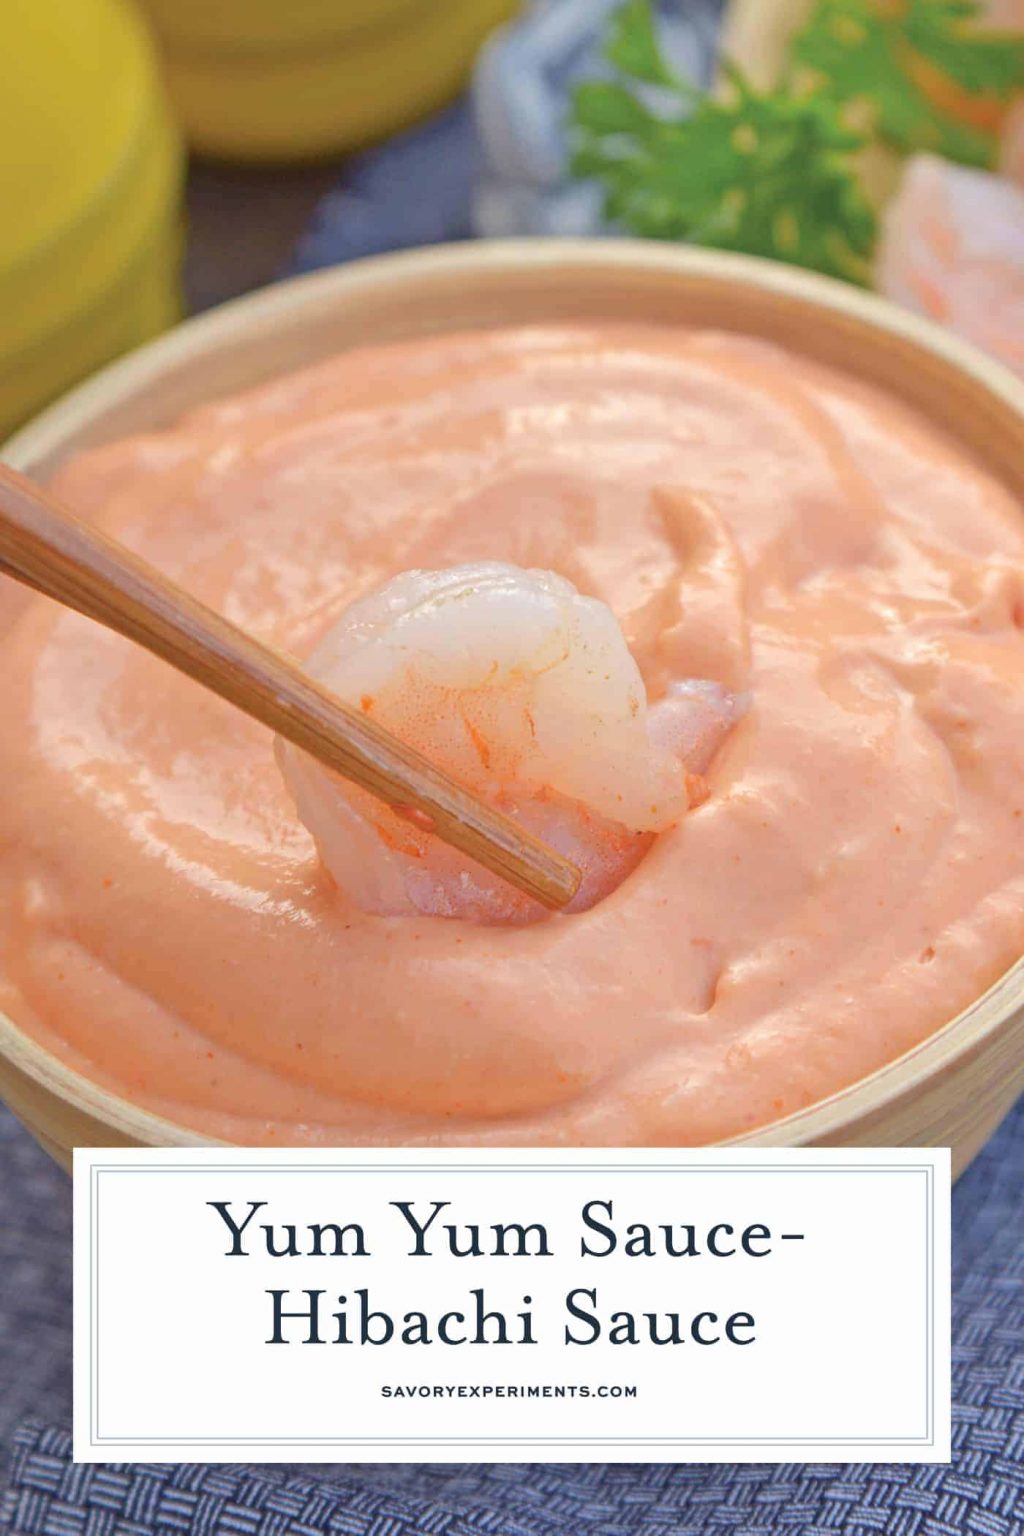 Homemade Yum Yum Sauce - Savory Experiments